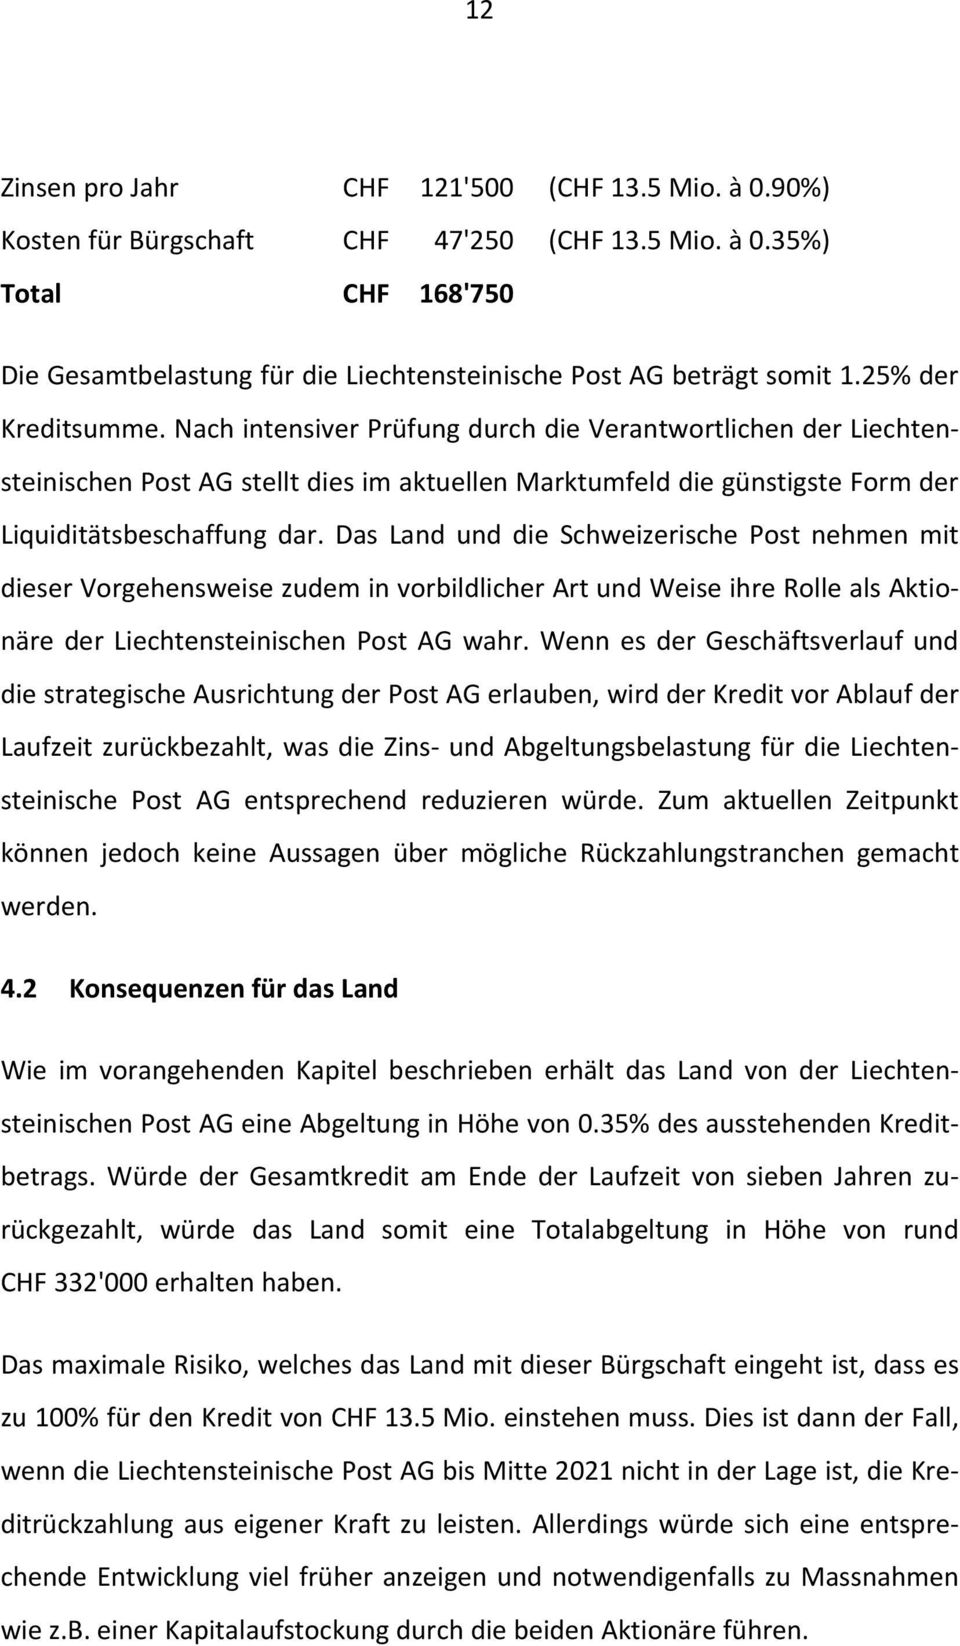 Das Land und die Schweizerische Post nehmen mit dieser Vorgehensweise zudem in vorbildlicher Art und Weise ihre Rolle als Aktionäre der Liechtensteinischen Post AG wahr.